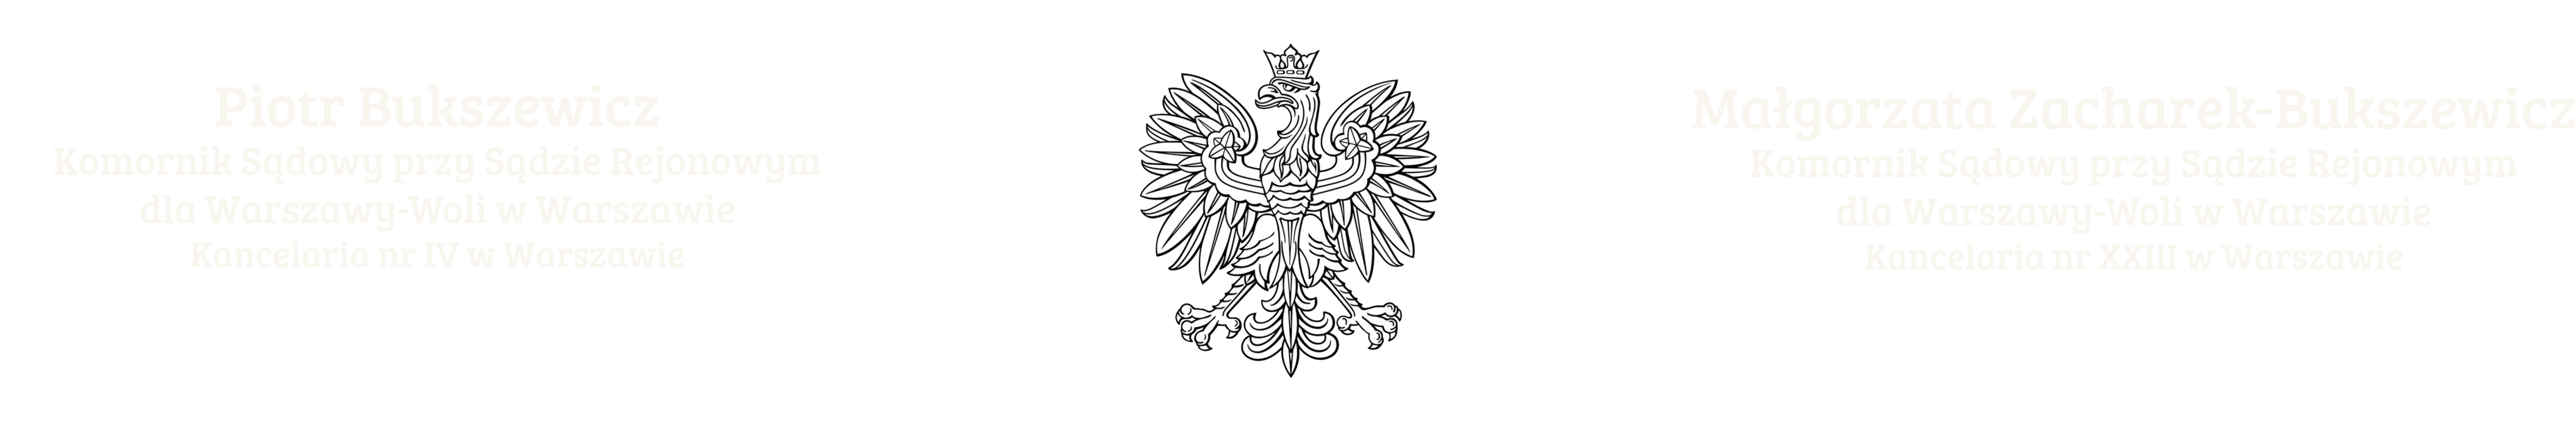 Komornik Warszawa-Wola – Komornik Sądowy przy Sądzie Rejonowym dla Warszawy-Woli